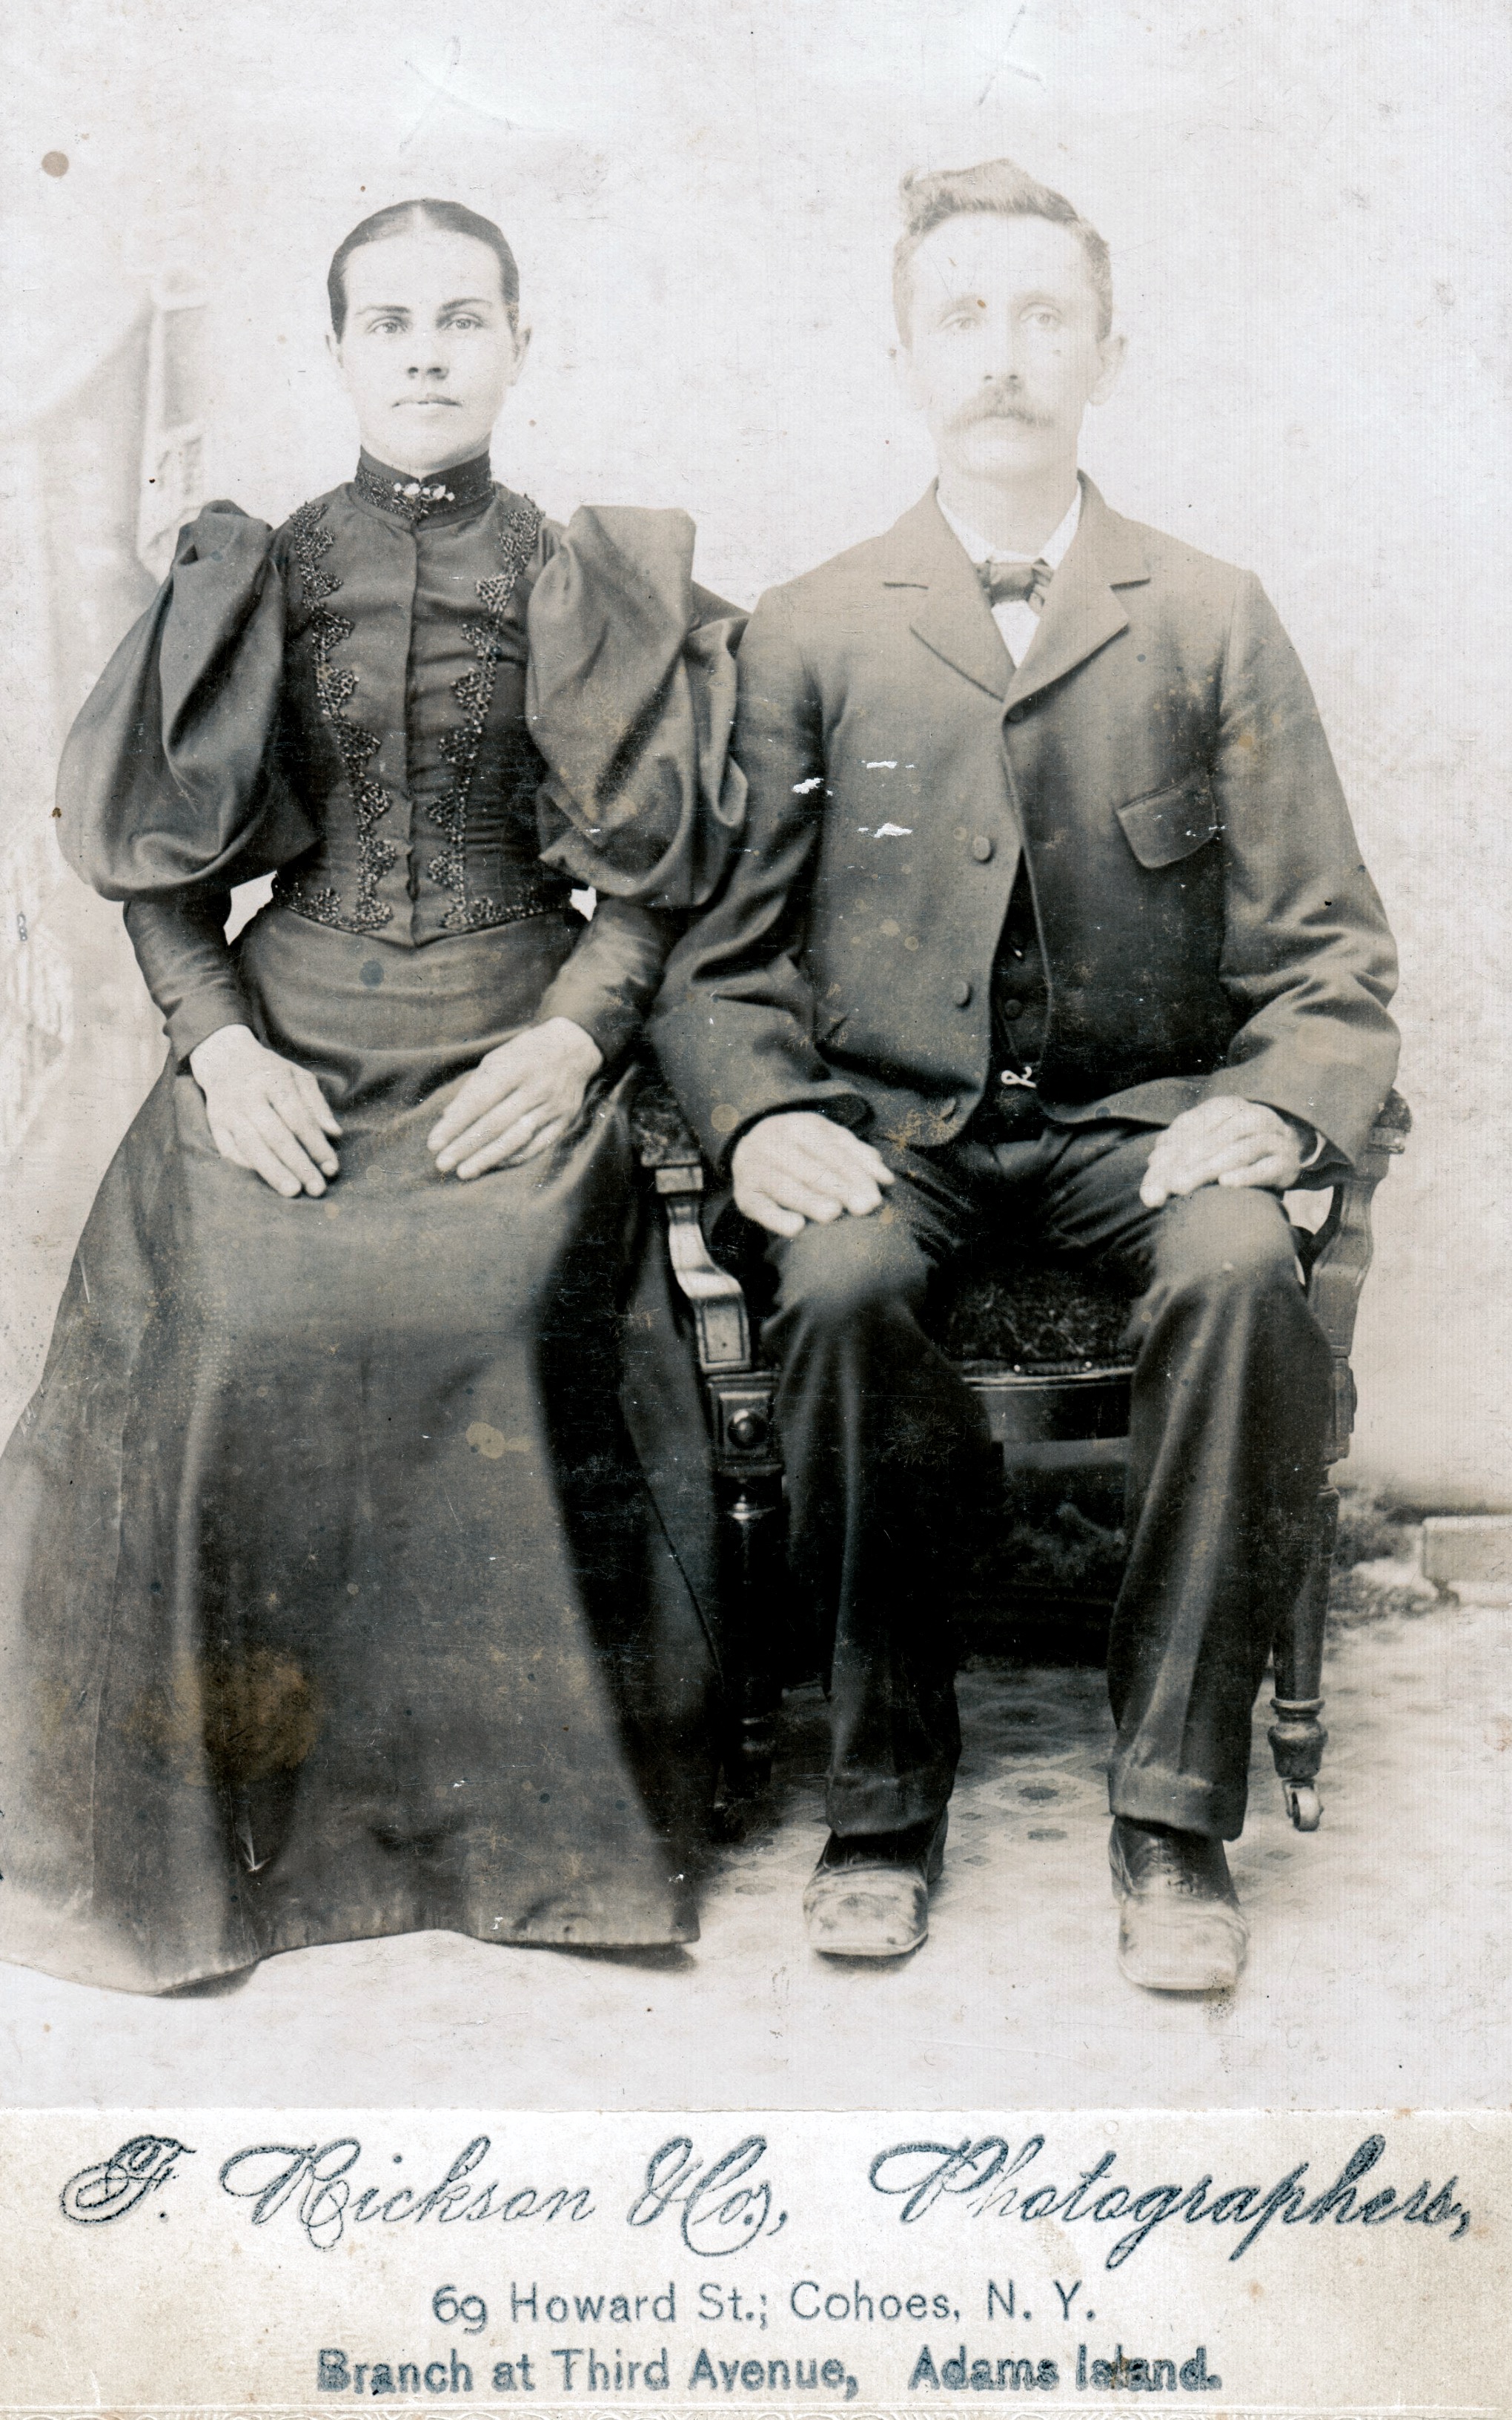 Mariage de Emma Mireault la deuxième épouse de Lactance Laforest le père  de mon grand père Laforest en 1890
Emma s’est remarié en deuxième noce avec Théophile Gauthier